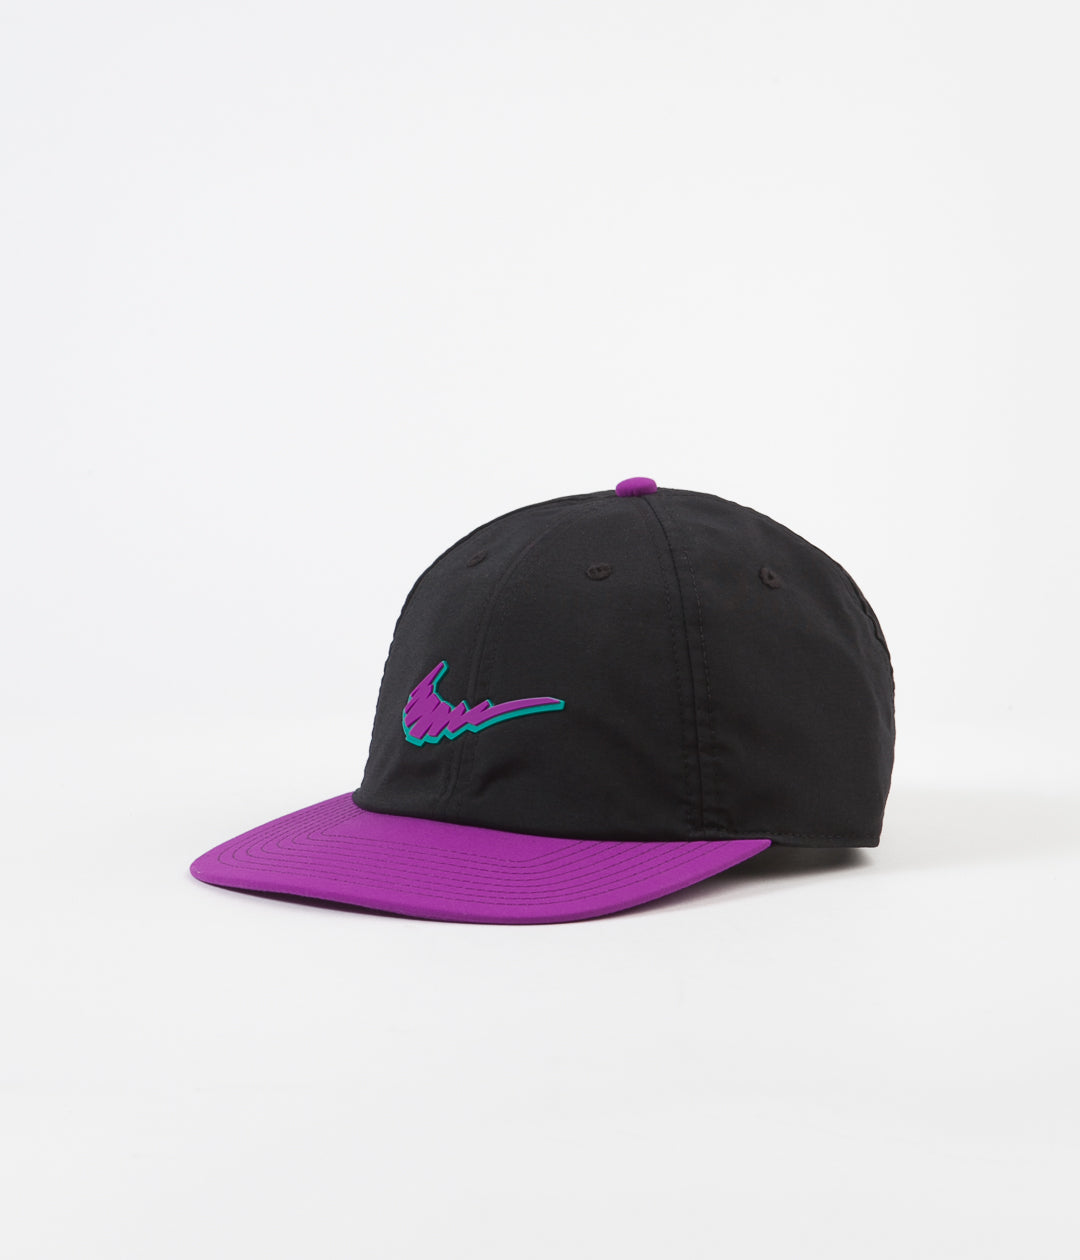 Nike Sb Heritage86 Logo Cap Black Vivid Purple Flatspot